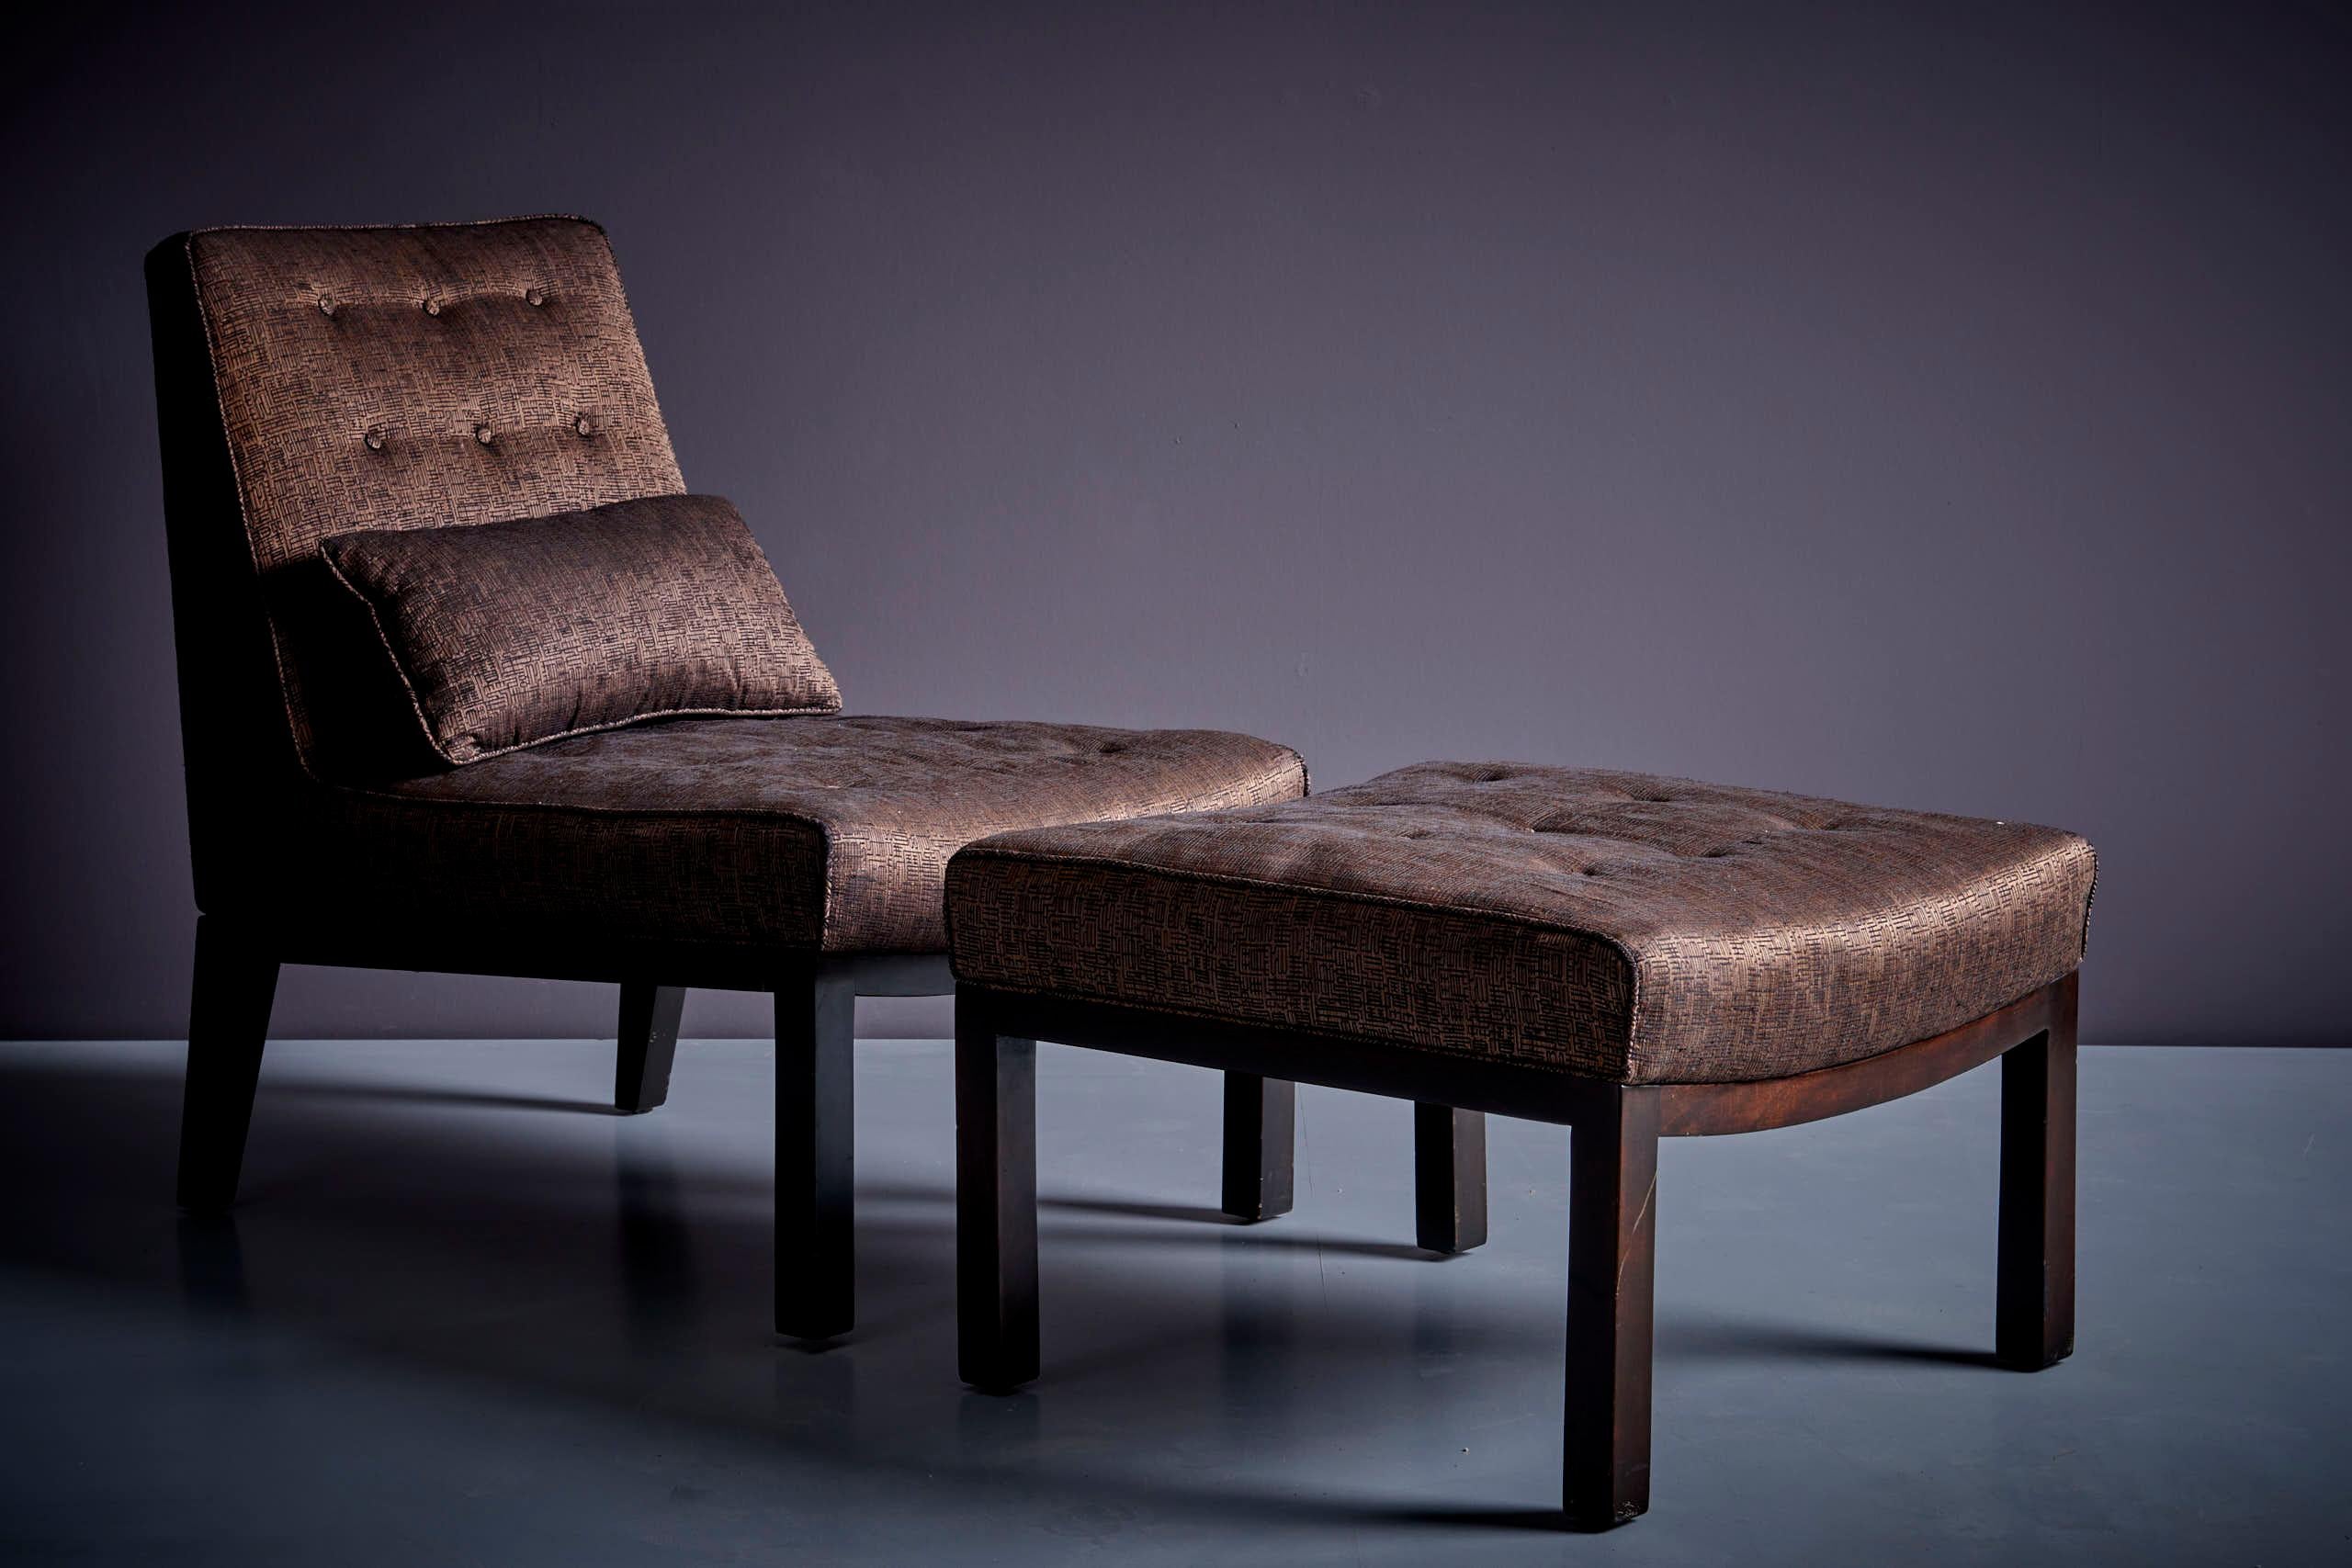 Edward Wormley Loungesessel mit Ottomane von Dunbar, USA 1960er Jahre
Dunbar Sessel mit Ottomane. Die angegebenen Maße gelten für den Lounge Chair. Die Ottomane ist 60 cm tief, 60 cm breit, 40 cm hoch und hat eine Sitzhöhe von 40 cm. 
Der Stuhl